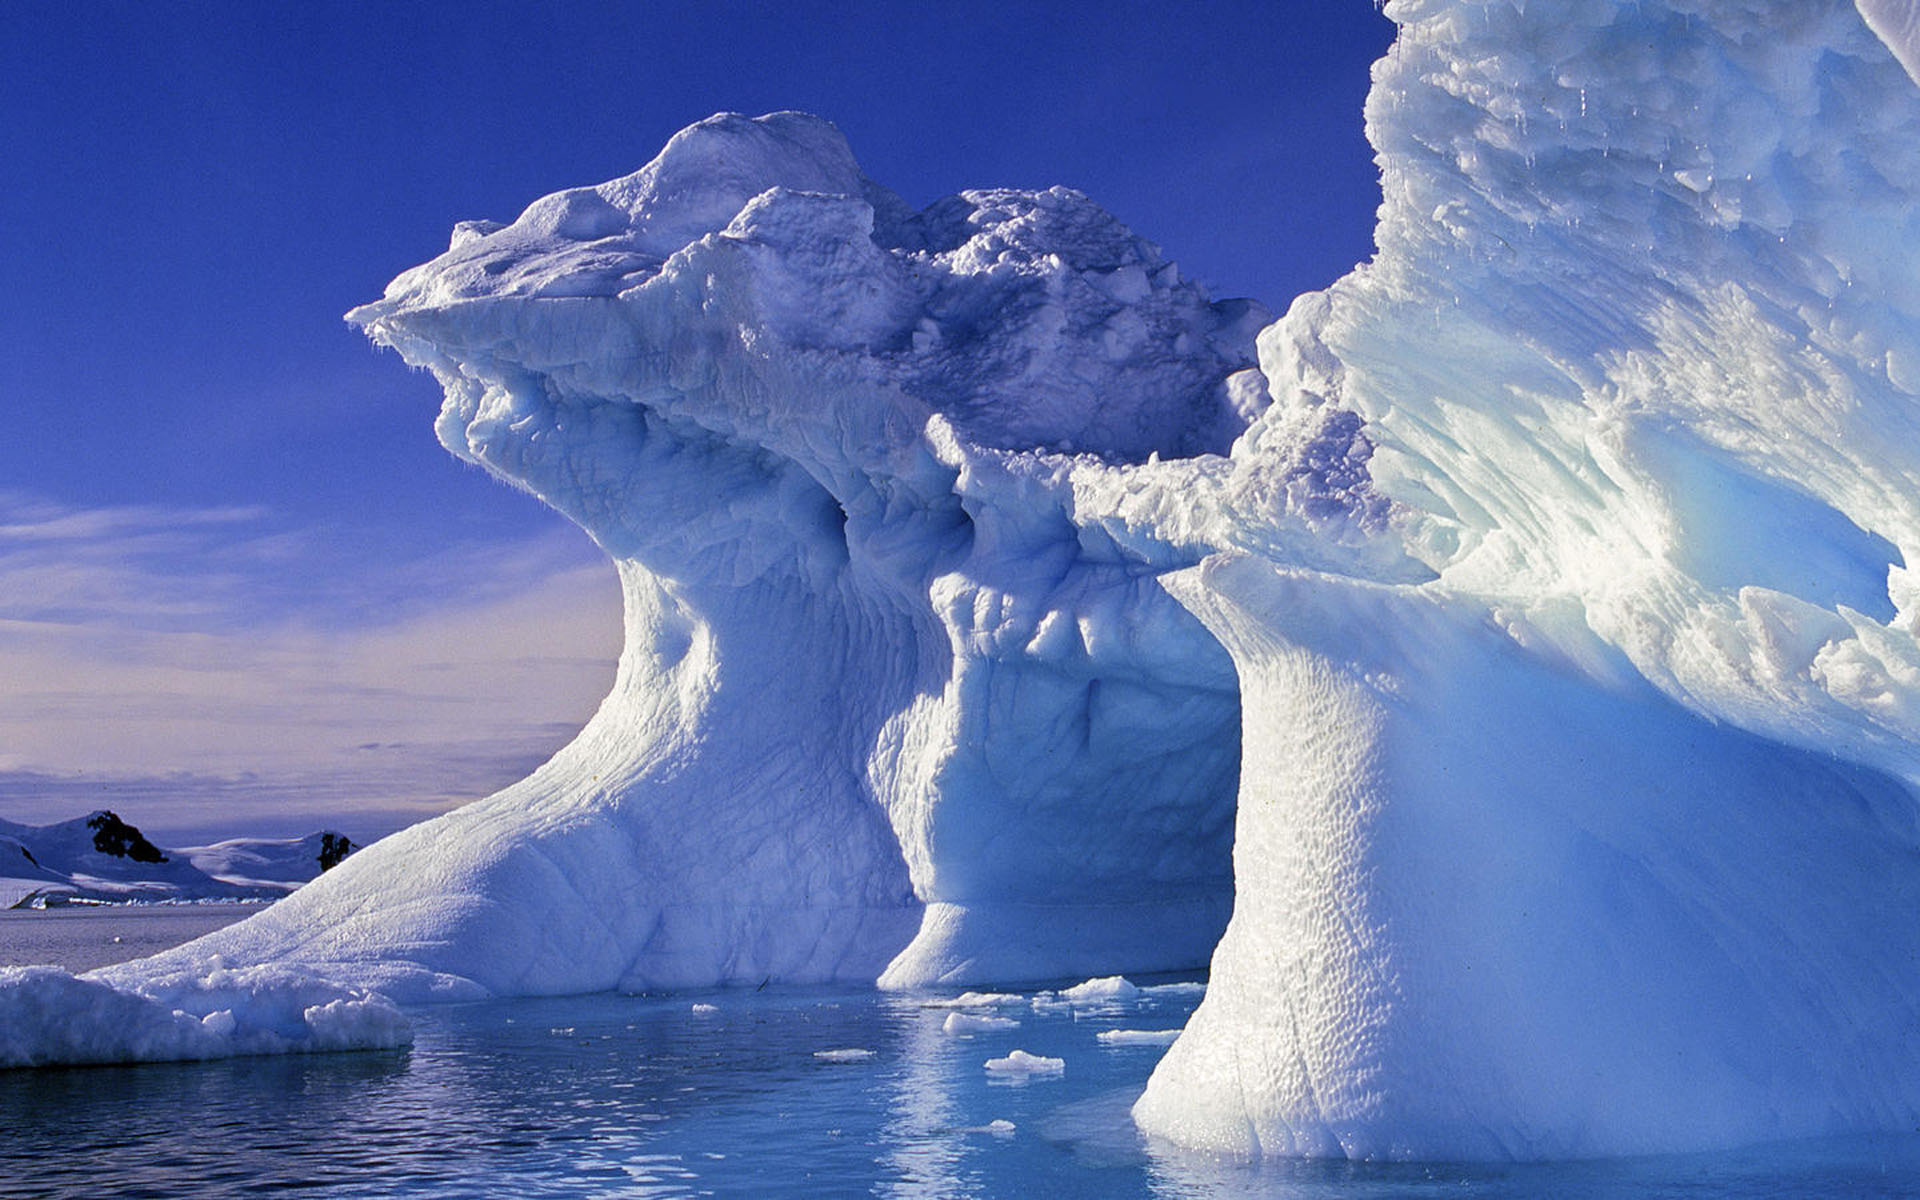 自然风景摄影作品 唯美白色冰山壮观风景图片(3)